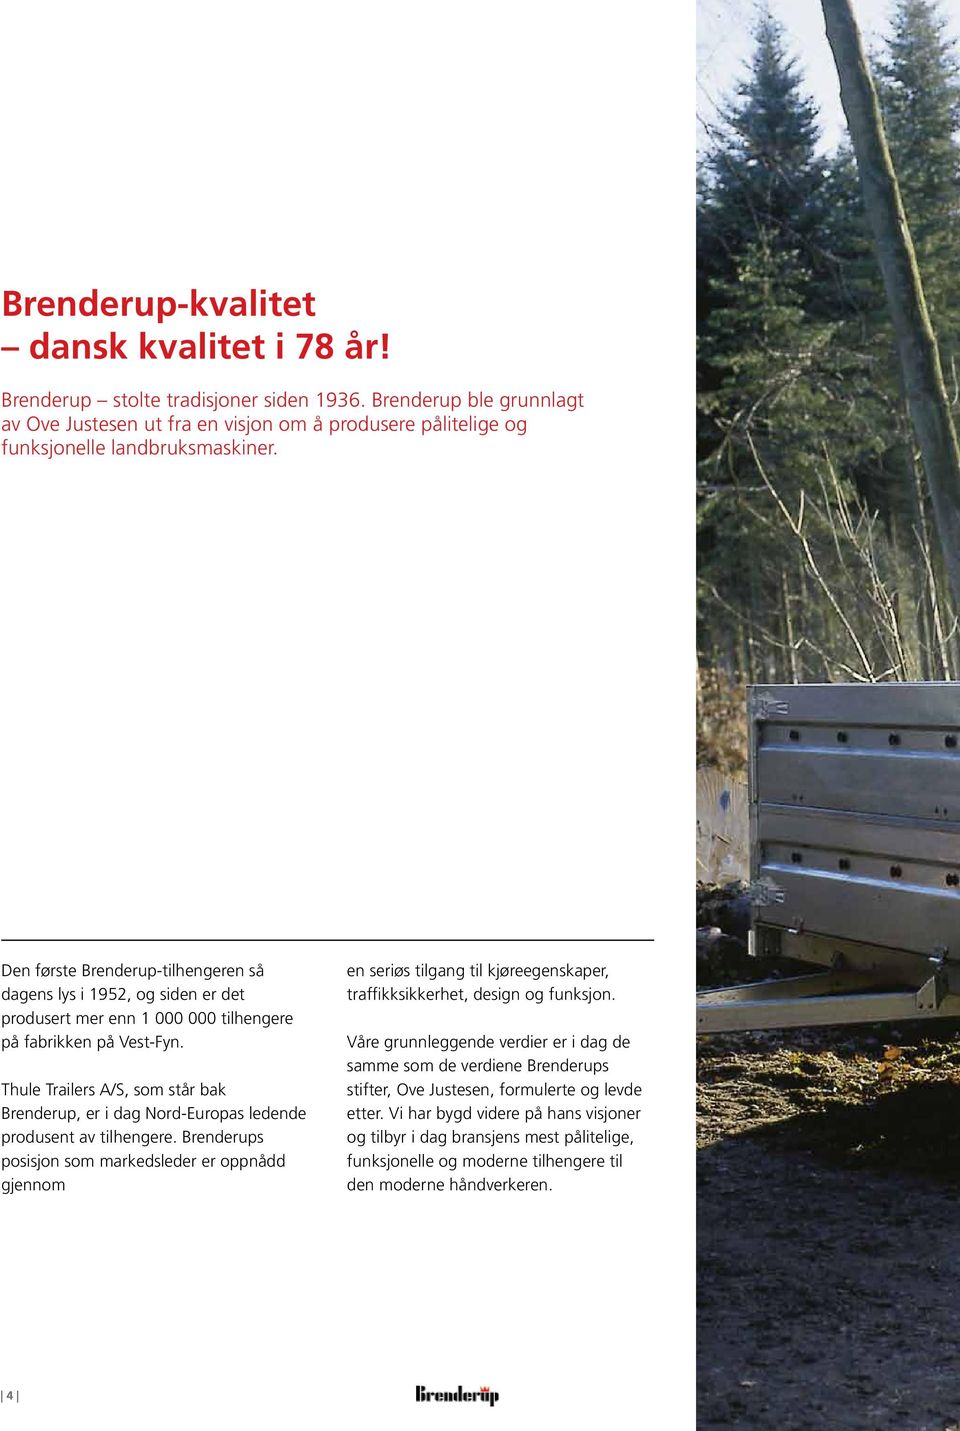 Den første Brenderup-tilhengeren så dagens lys i 1952, og siden er det produsert mer enn 1 000 000 tilhengere på fabrikken på Vest-Fyn.